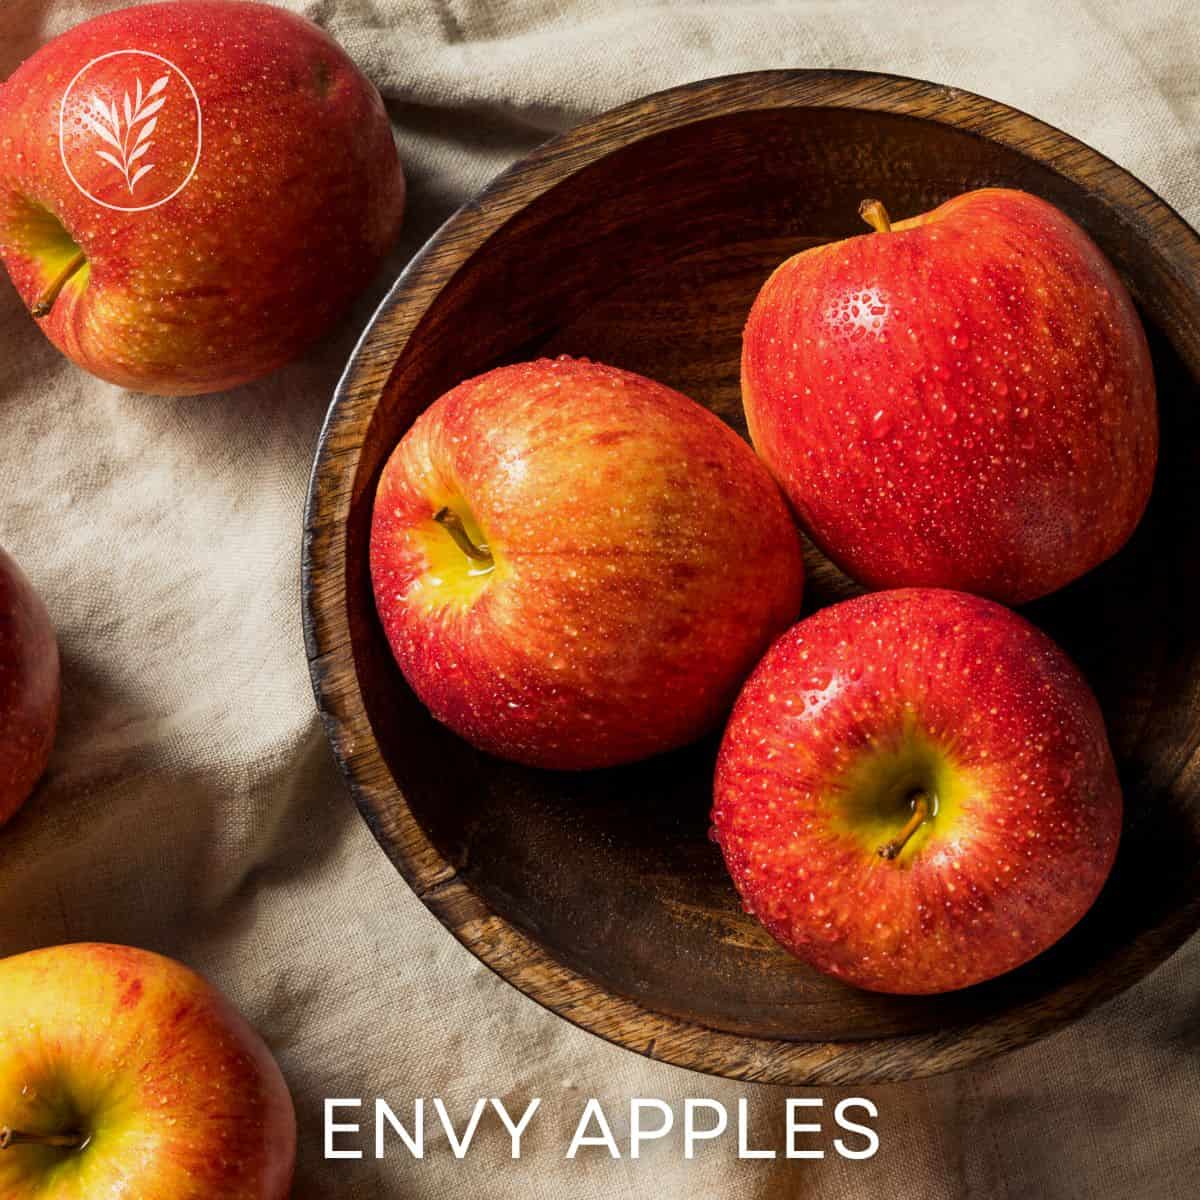 Envy apples via @home4theharvest